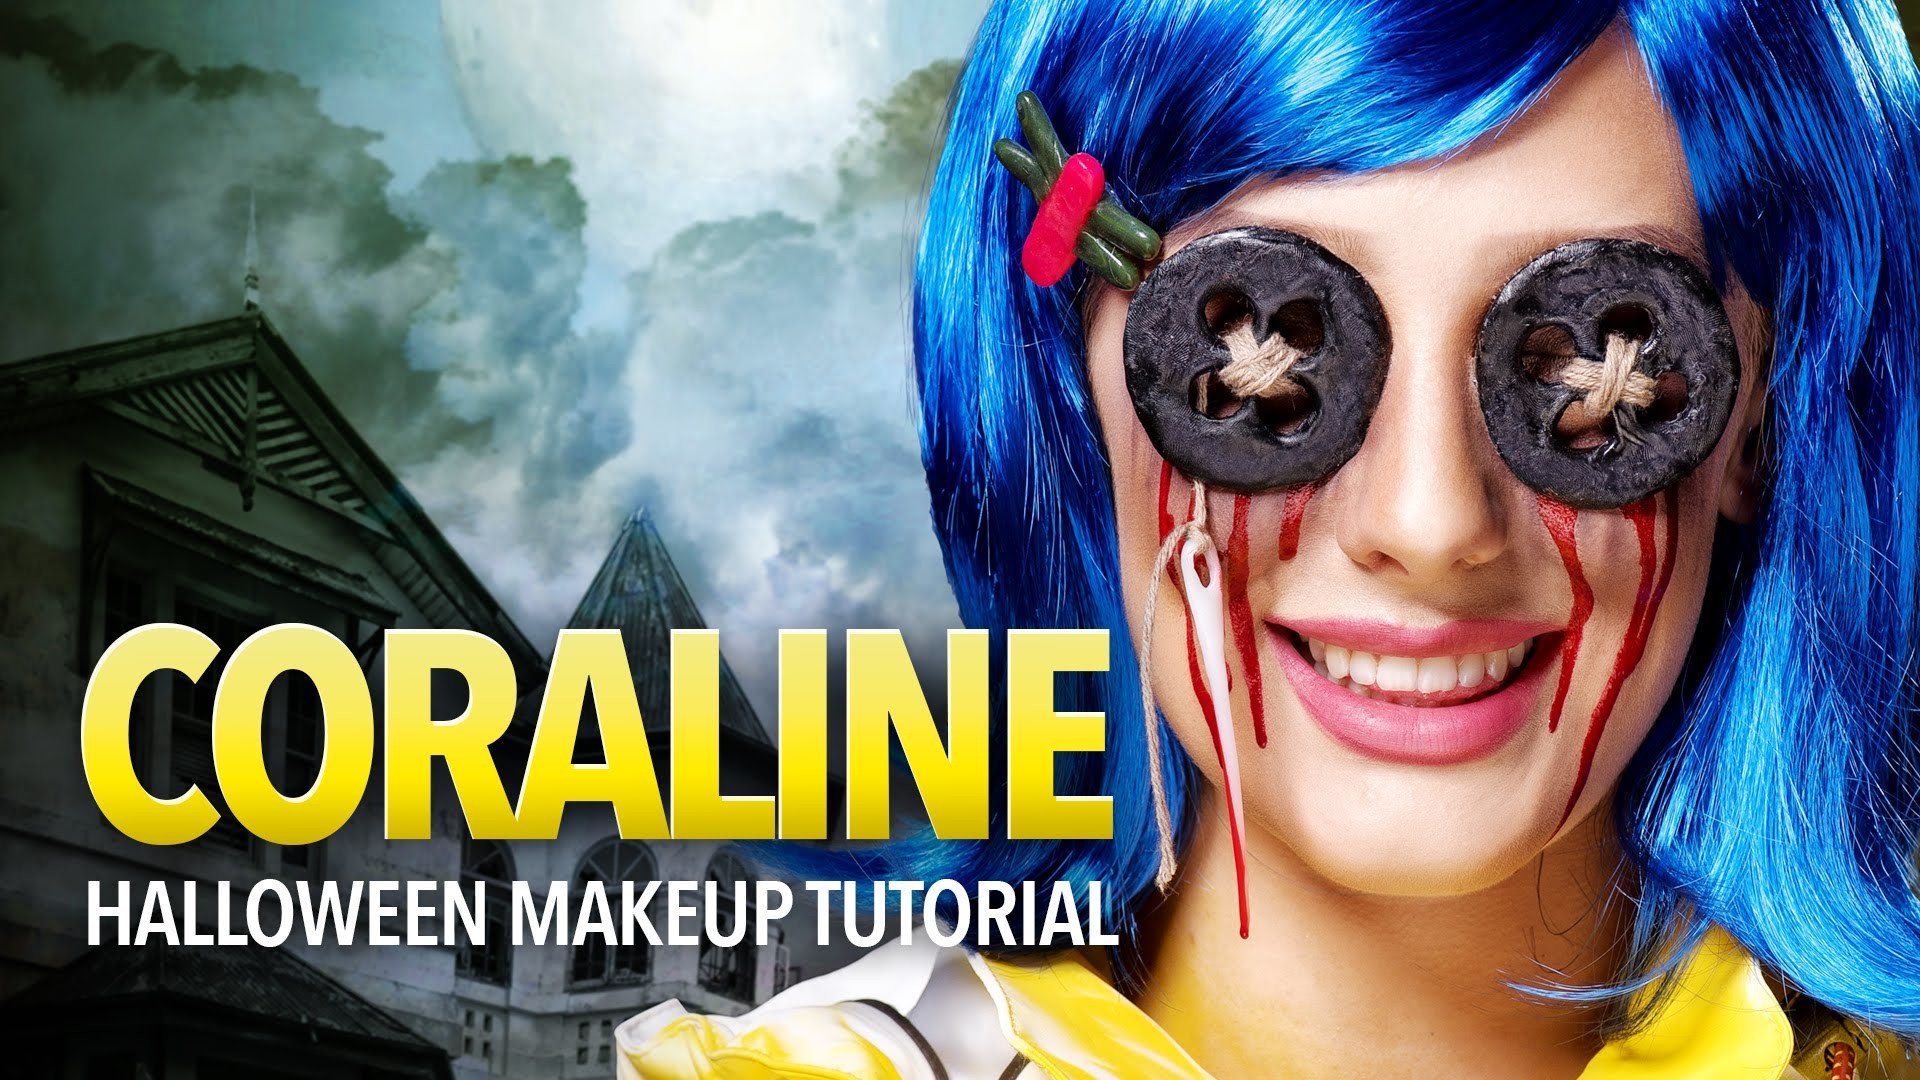 Coraline Halloween Makeup Tutorial